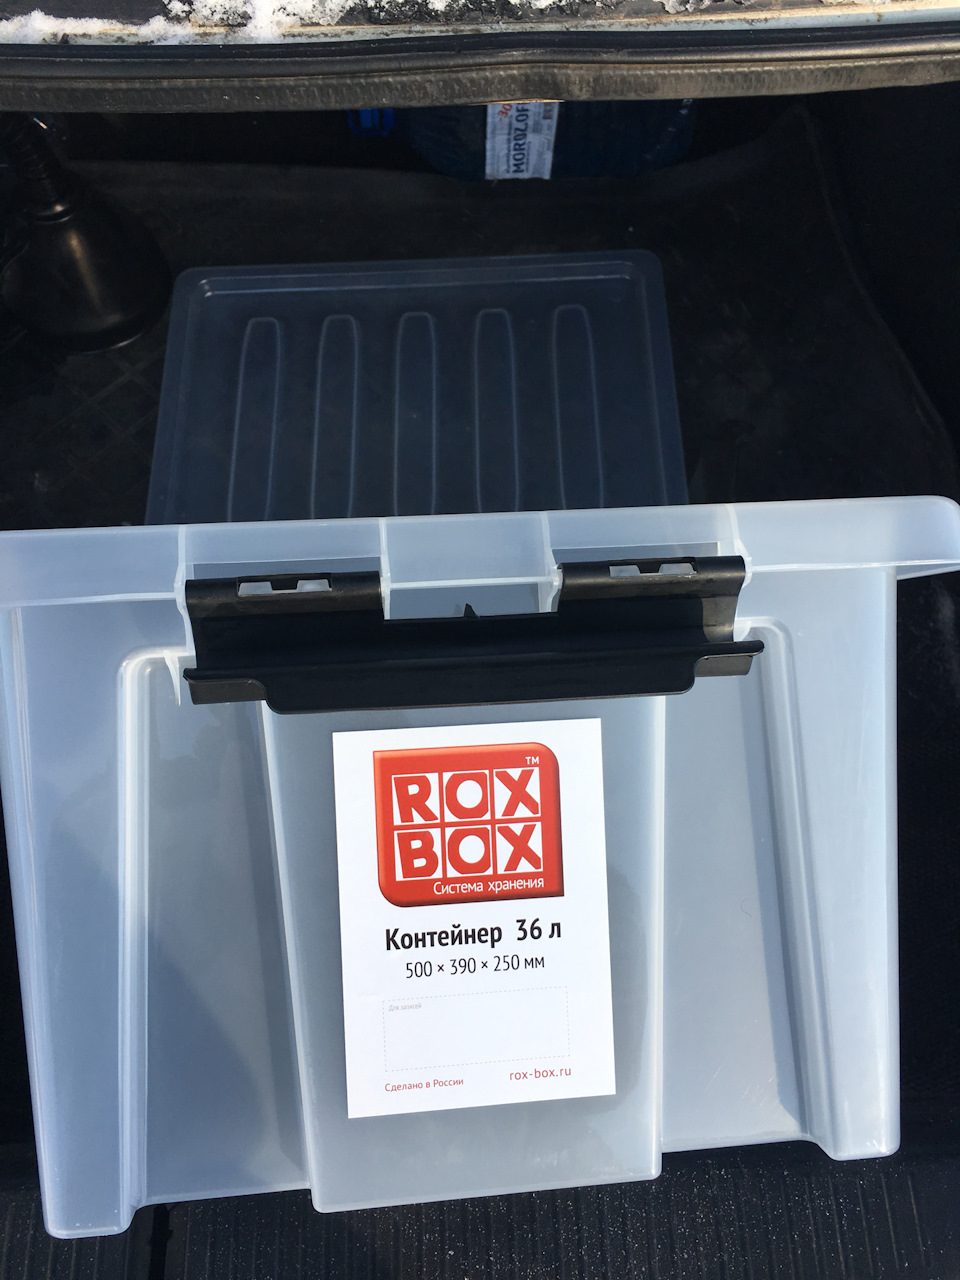 Rox box 120. Rox Box 120 литров. Контейнер Rox Box 36. Rox Box 240л. Rox Box Pro 70.